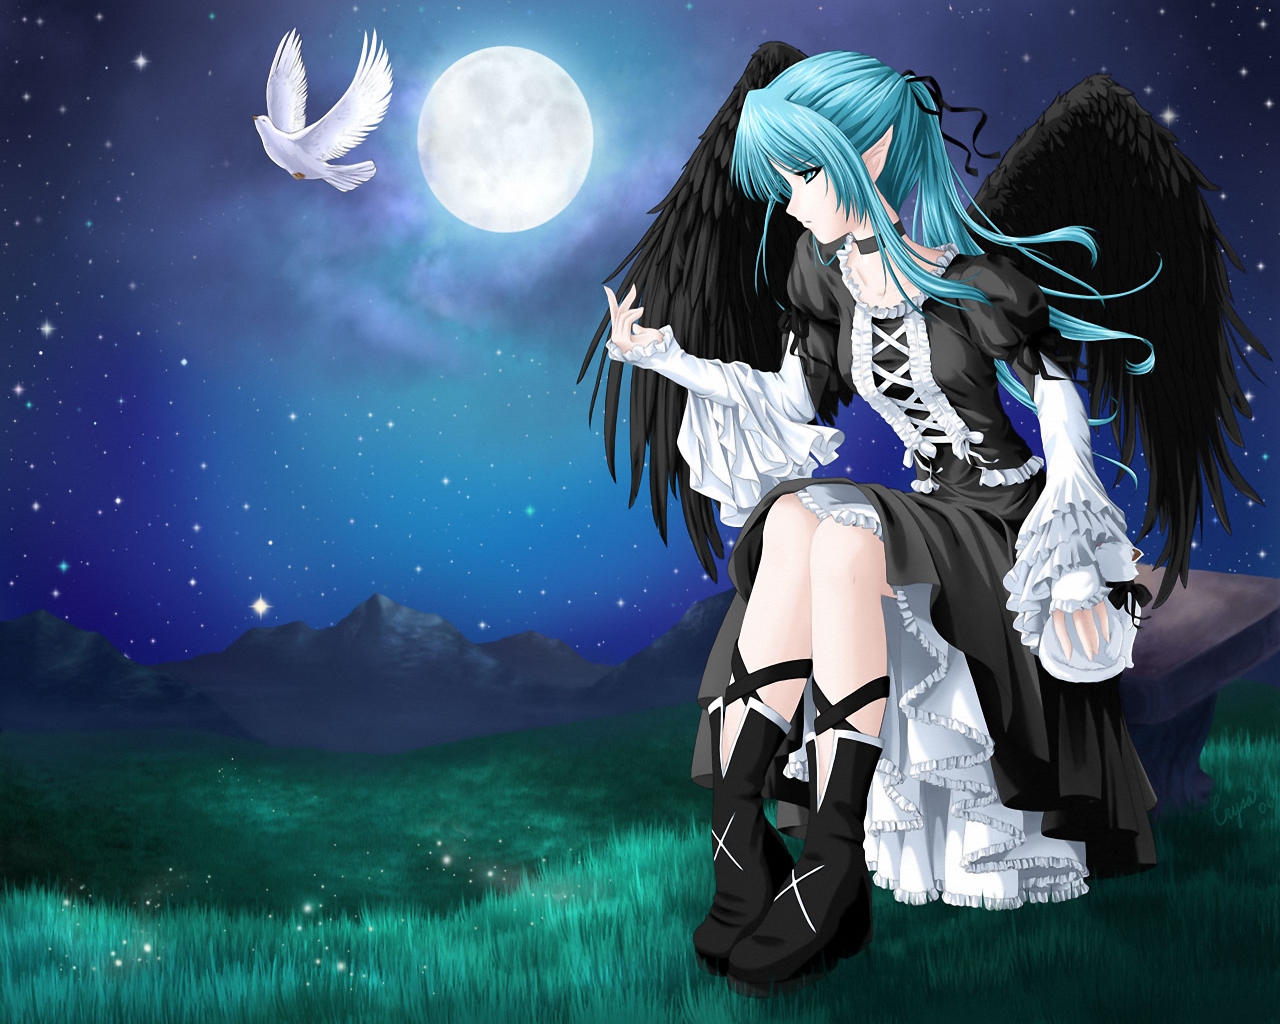 3d обои Девушка с чёрными крыльями лунной ночью сидит на скамейке и смотрит на улетающего с её руки белого голубя  манга # 53130